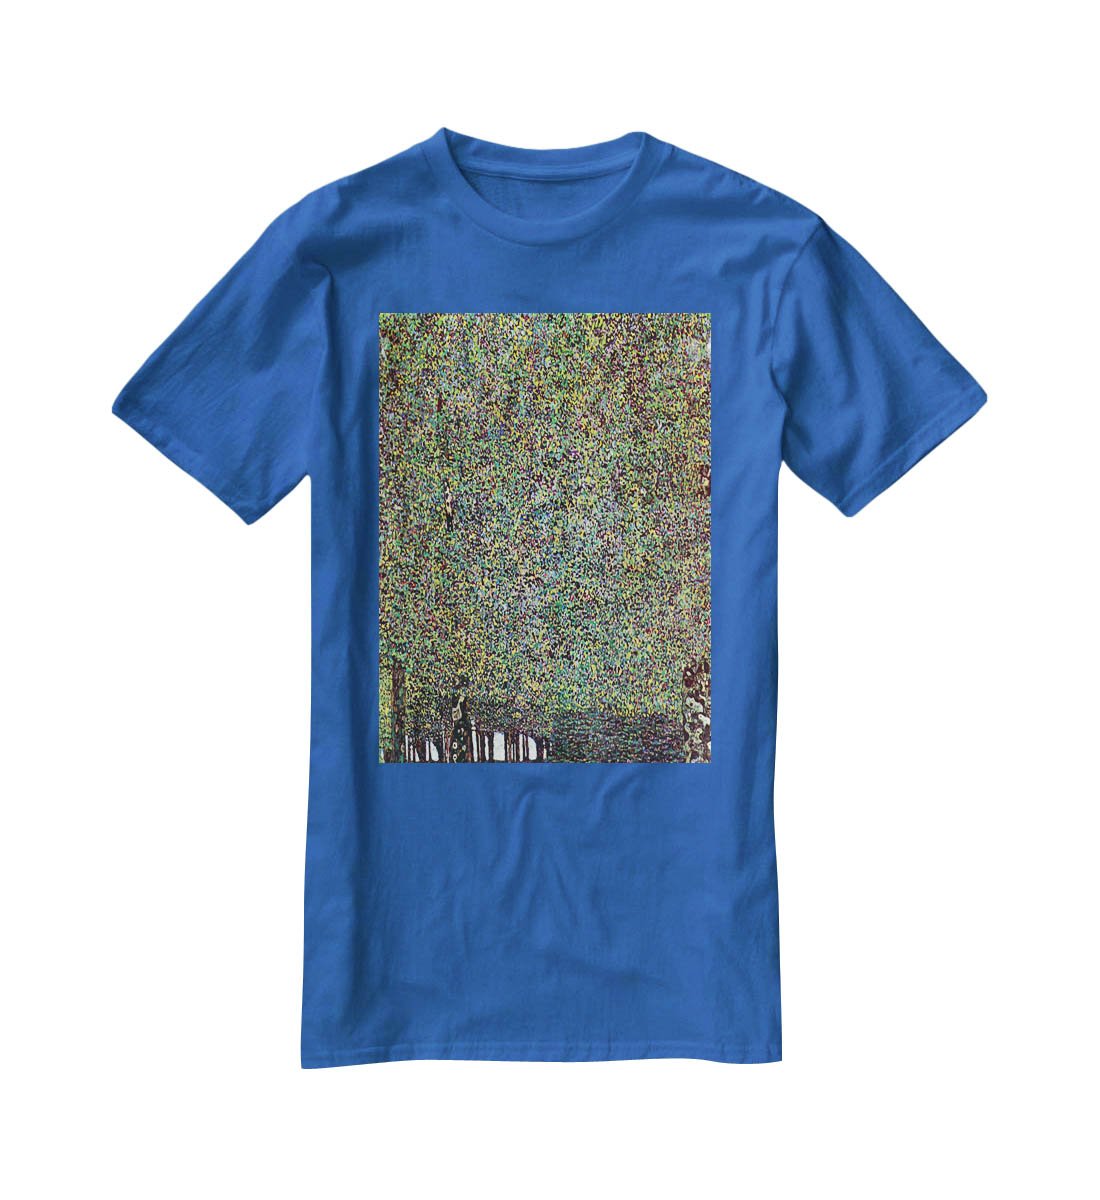 The Park by Klimt T-Shirt - Canvas Art Rocks - 2